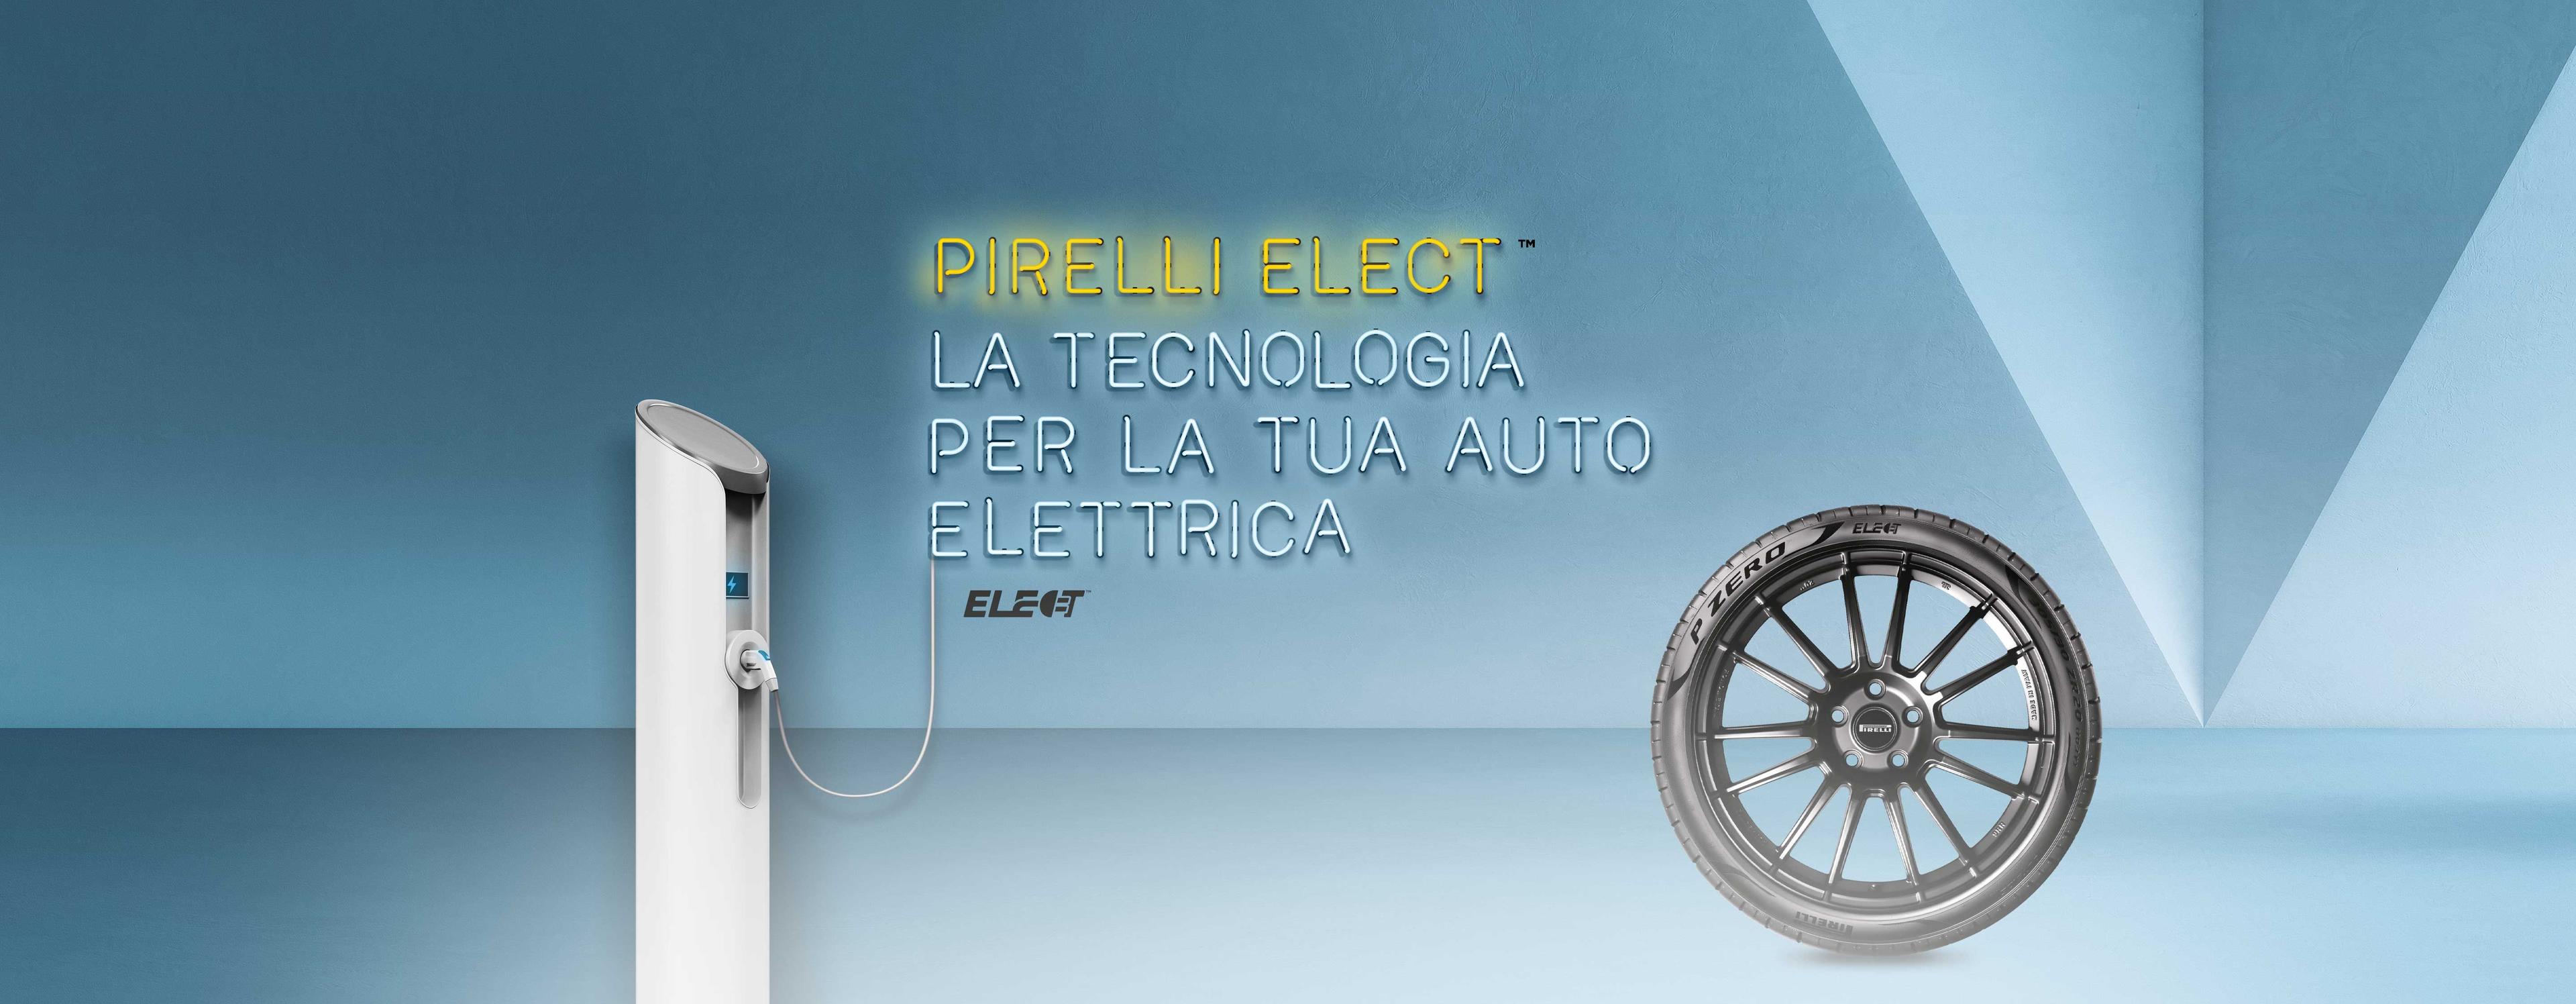 Pirelli Elect la tecnologia per la tua auto elettrica